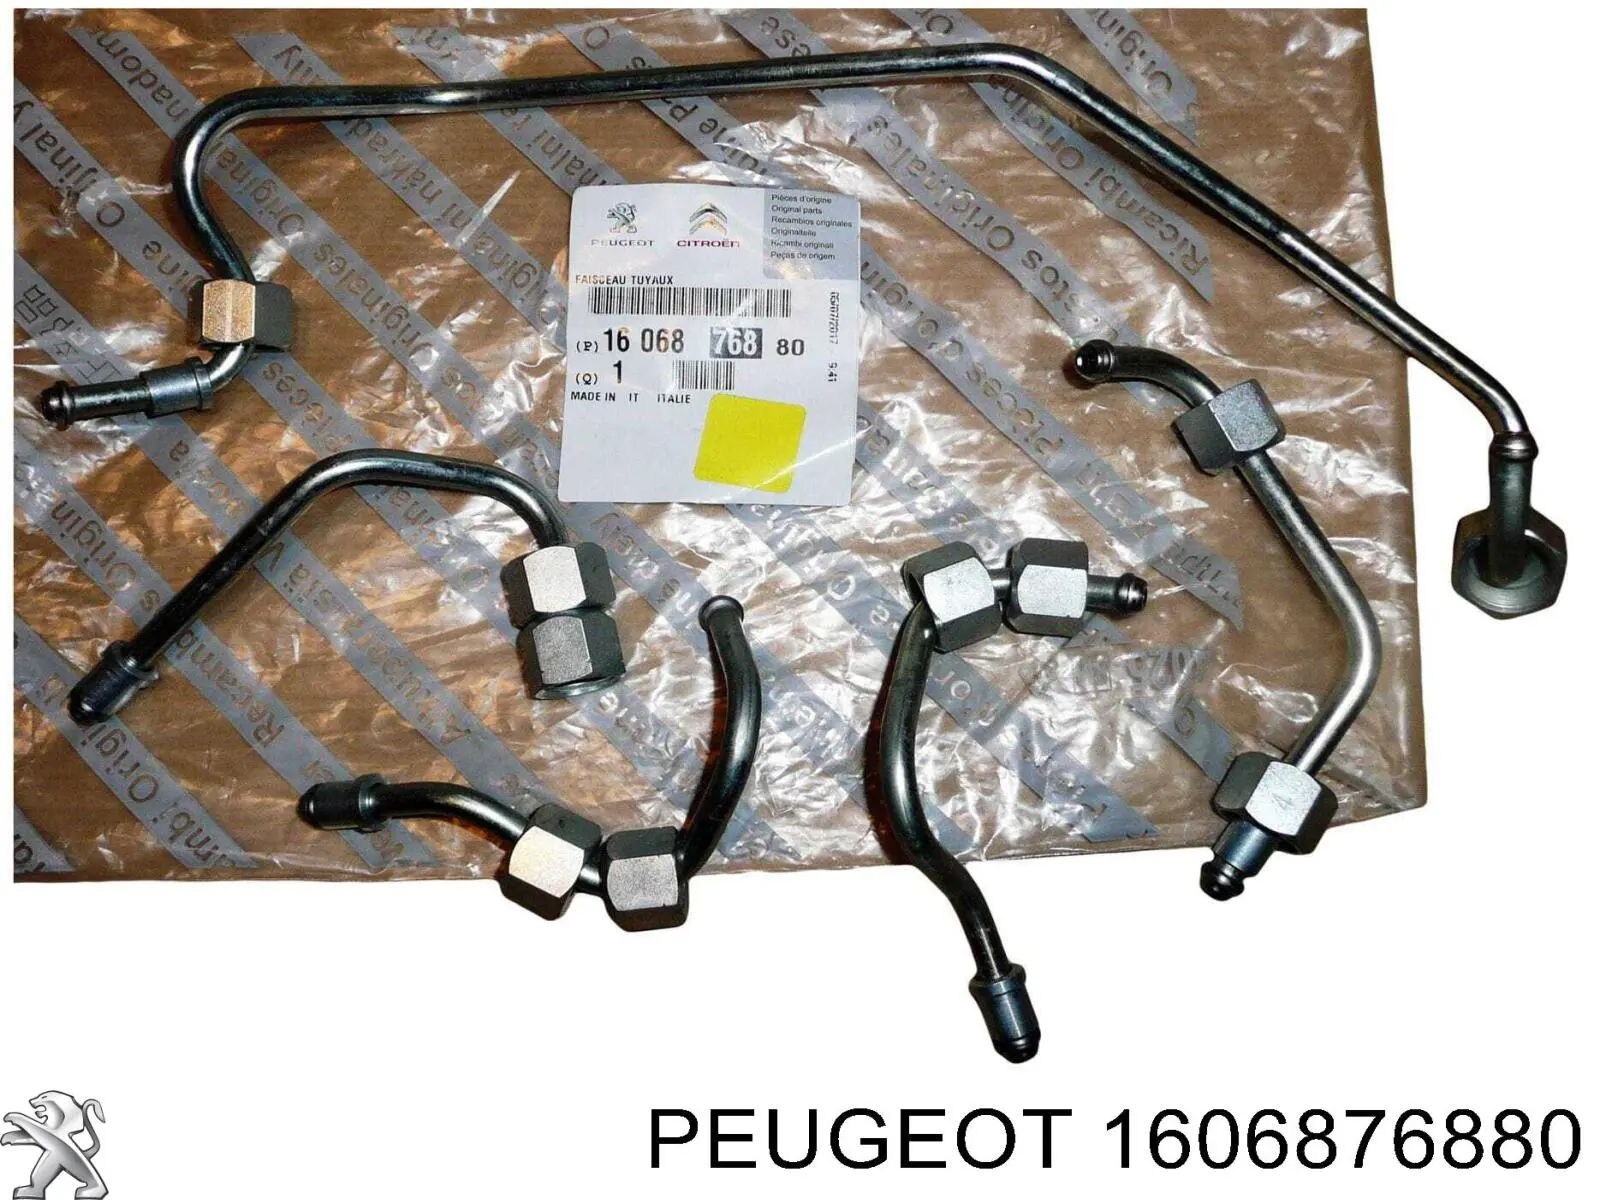 1606876880 Peugeot/Citroen juego de tuberias para combustibles